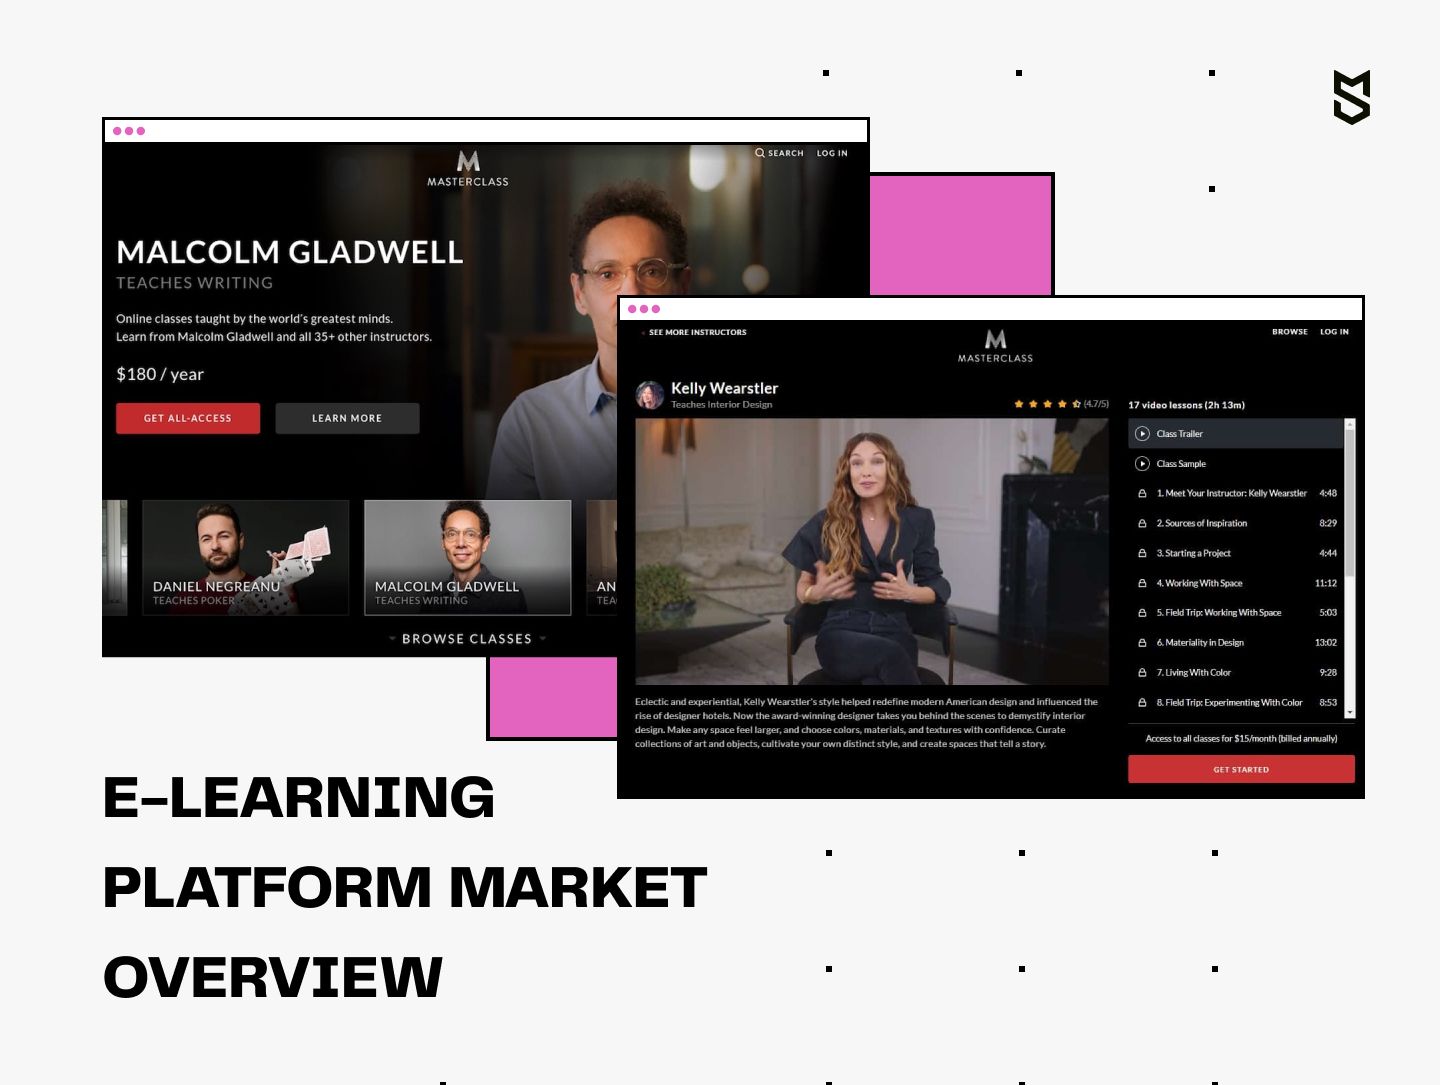 E-learning platform market overview